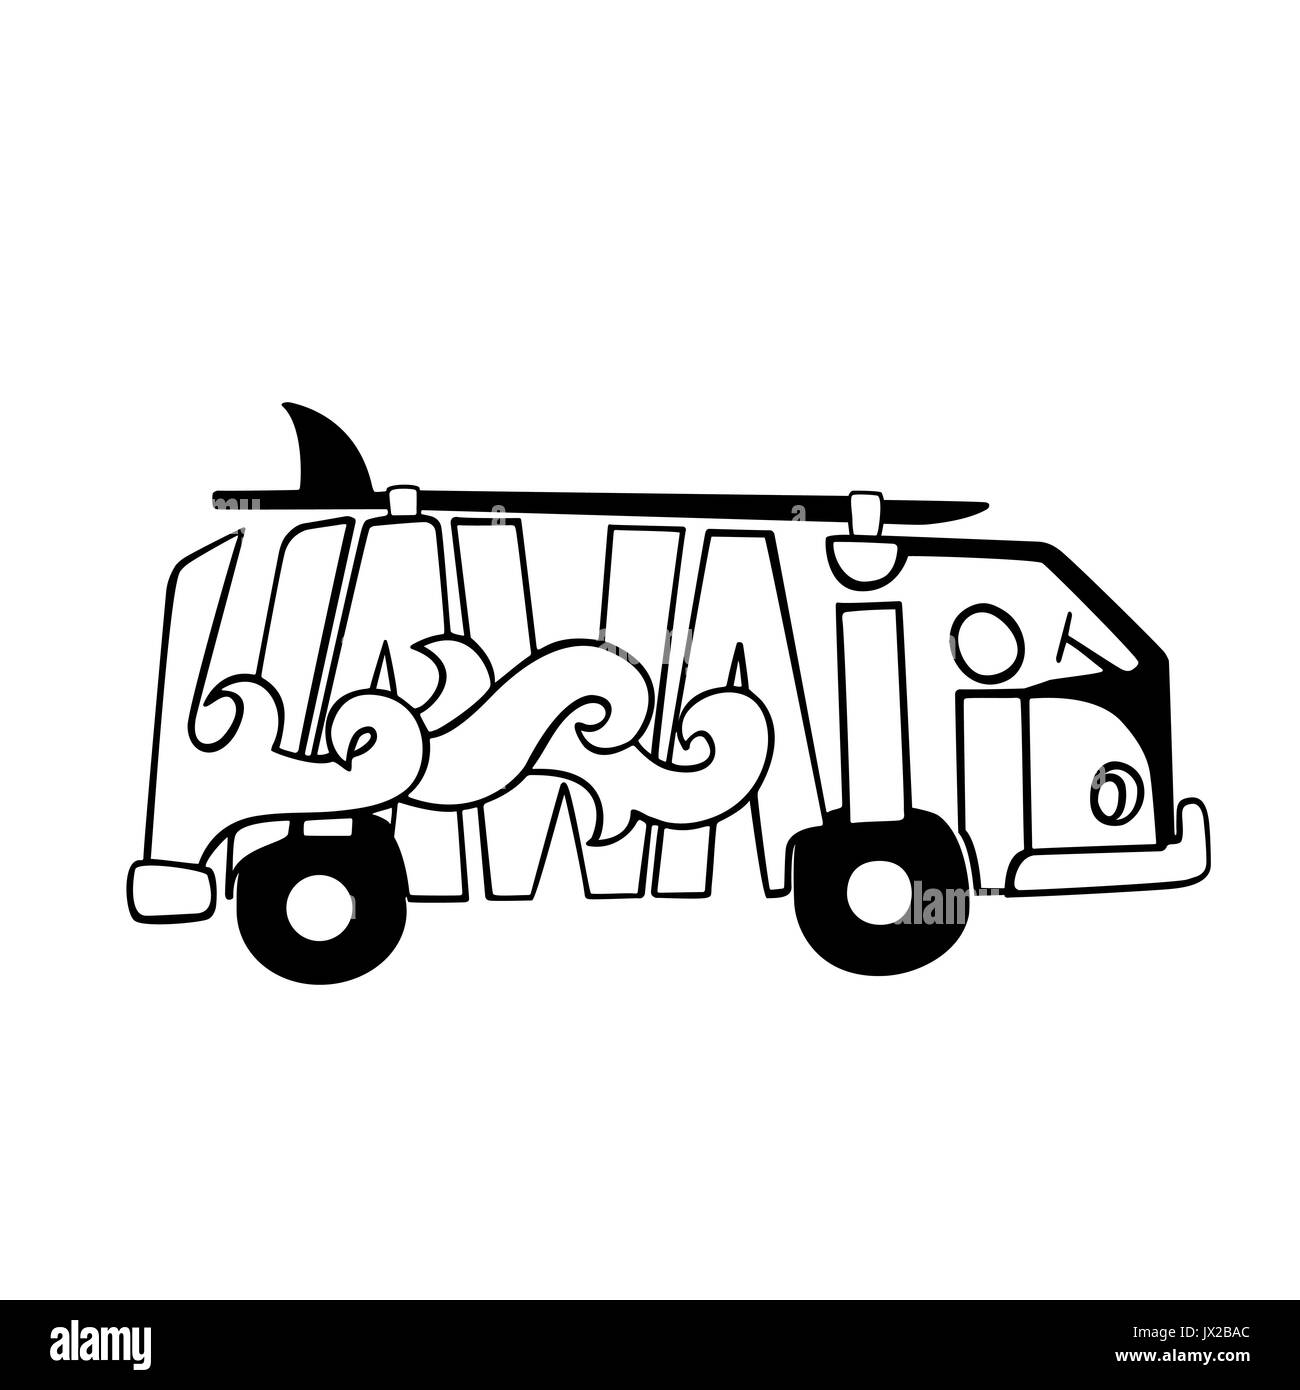 Schwarz und Weiß Hawaii surfen Drucken. Handdrawn Schriftzug mit einem Minivan. Vektor bus Abbildung. Stock Vektor